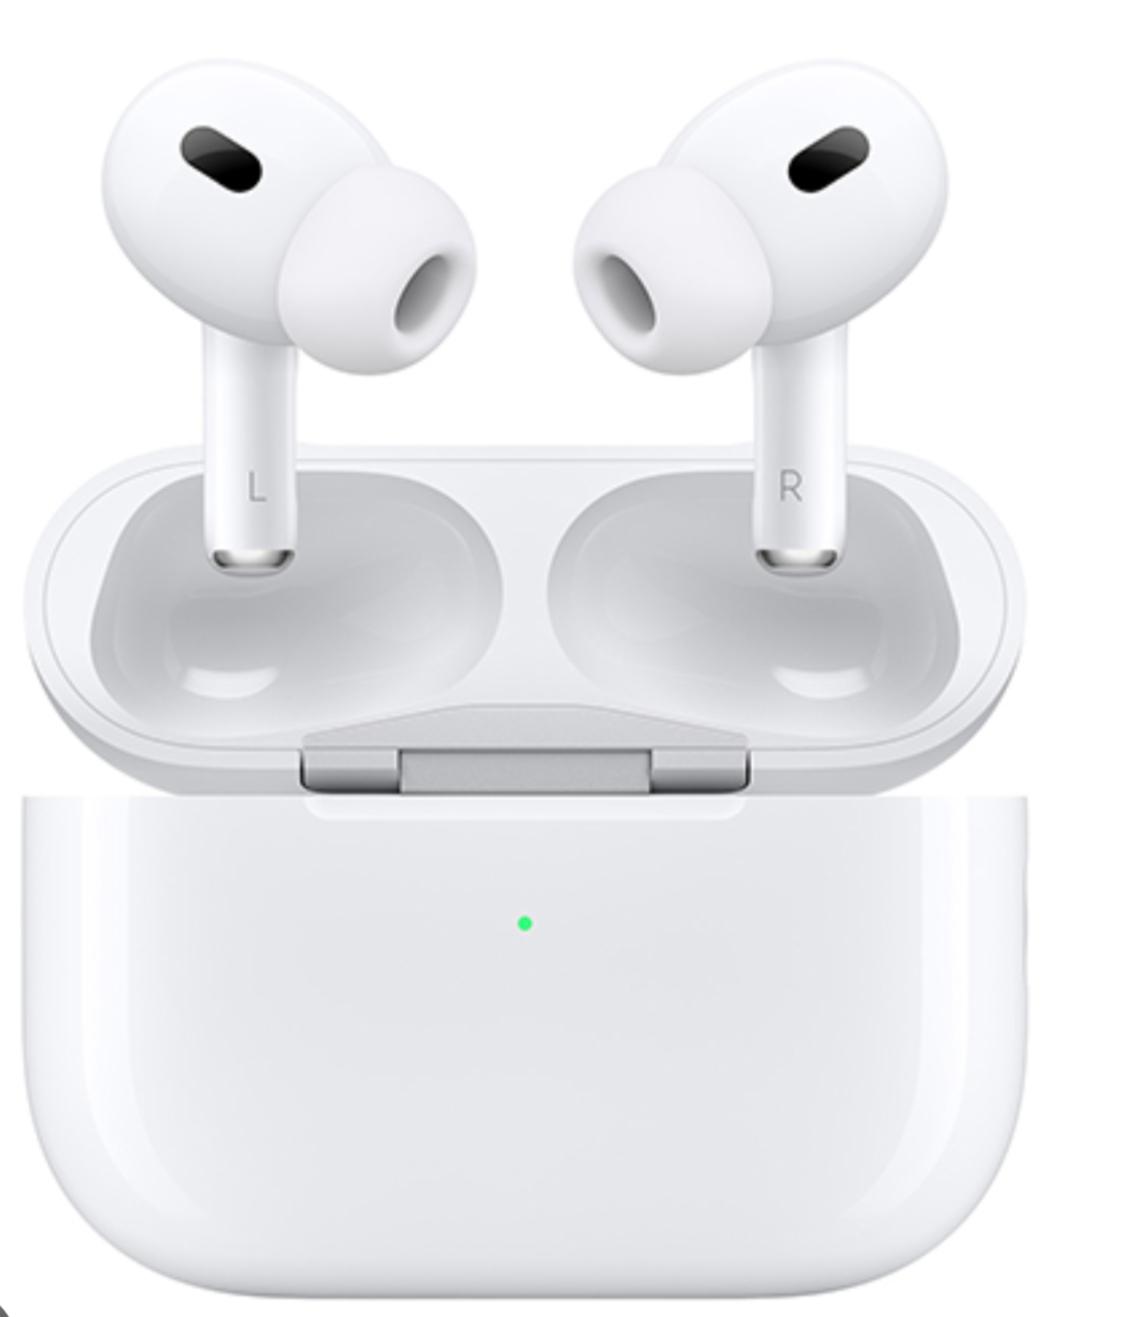 Apple Airpods Pro 2 adalah salah satu dari 15 rekomendasi tws terbaik untuk budget rakyat hingga sultan